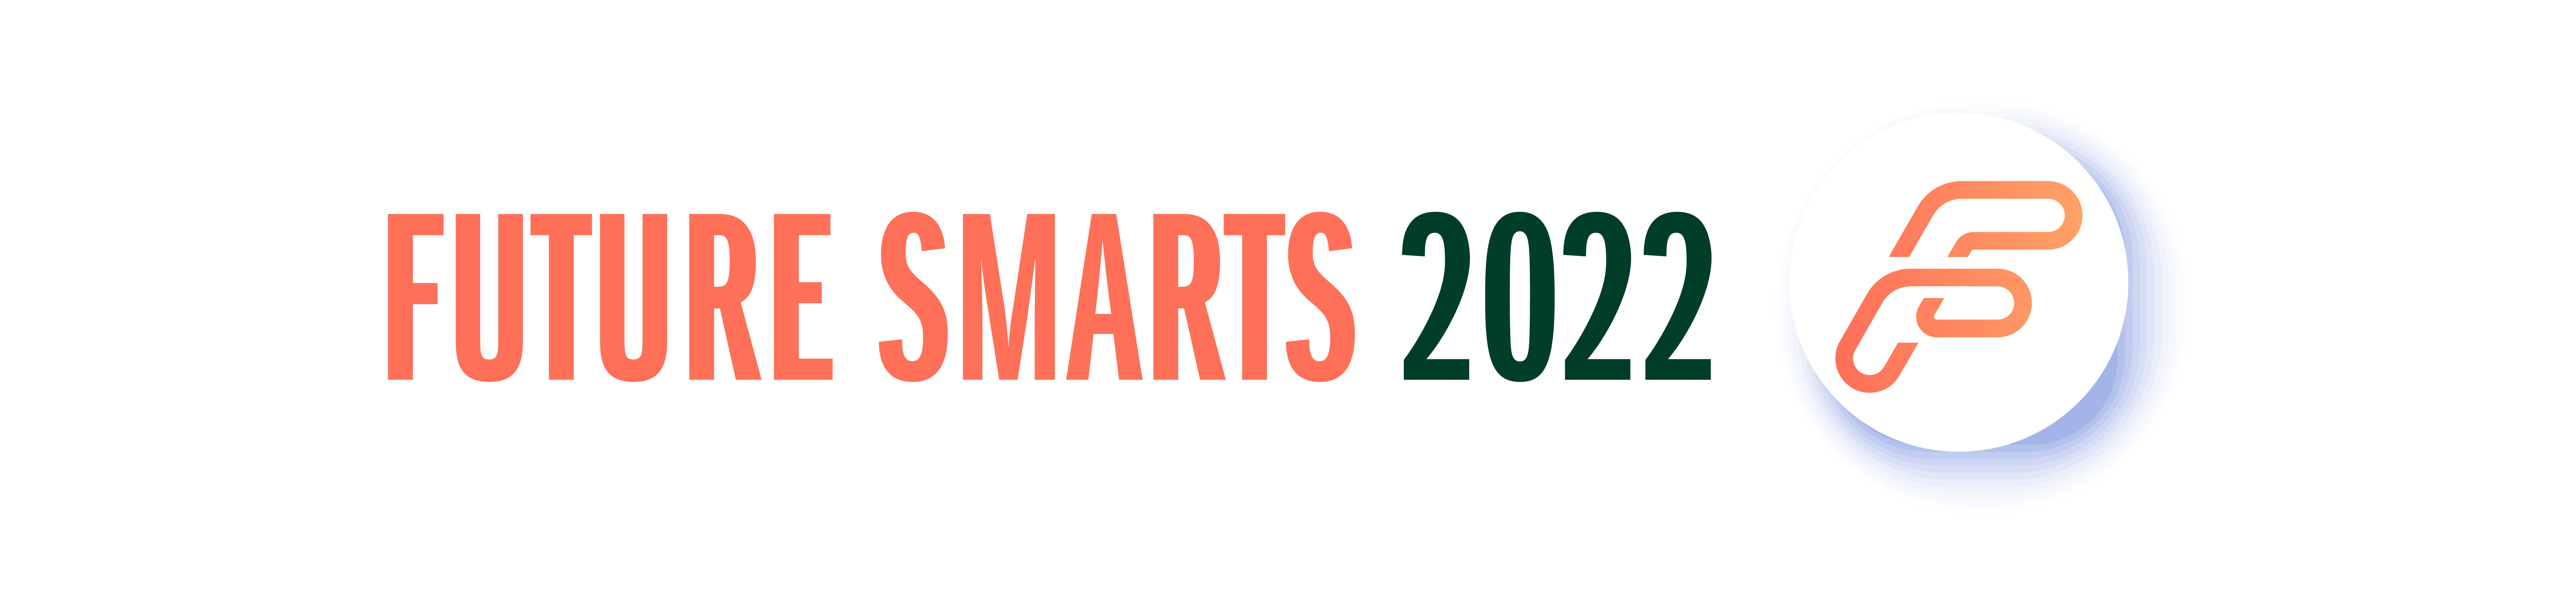 Beverage Digest Future Smarts 2022